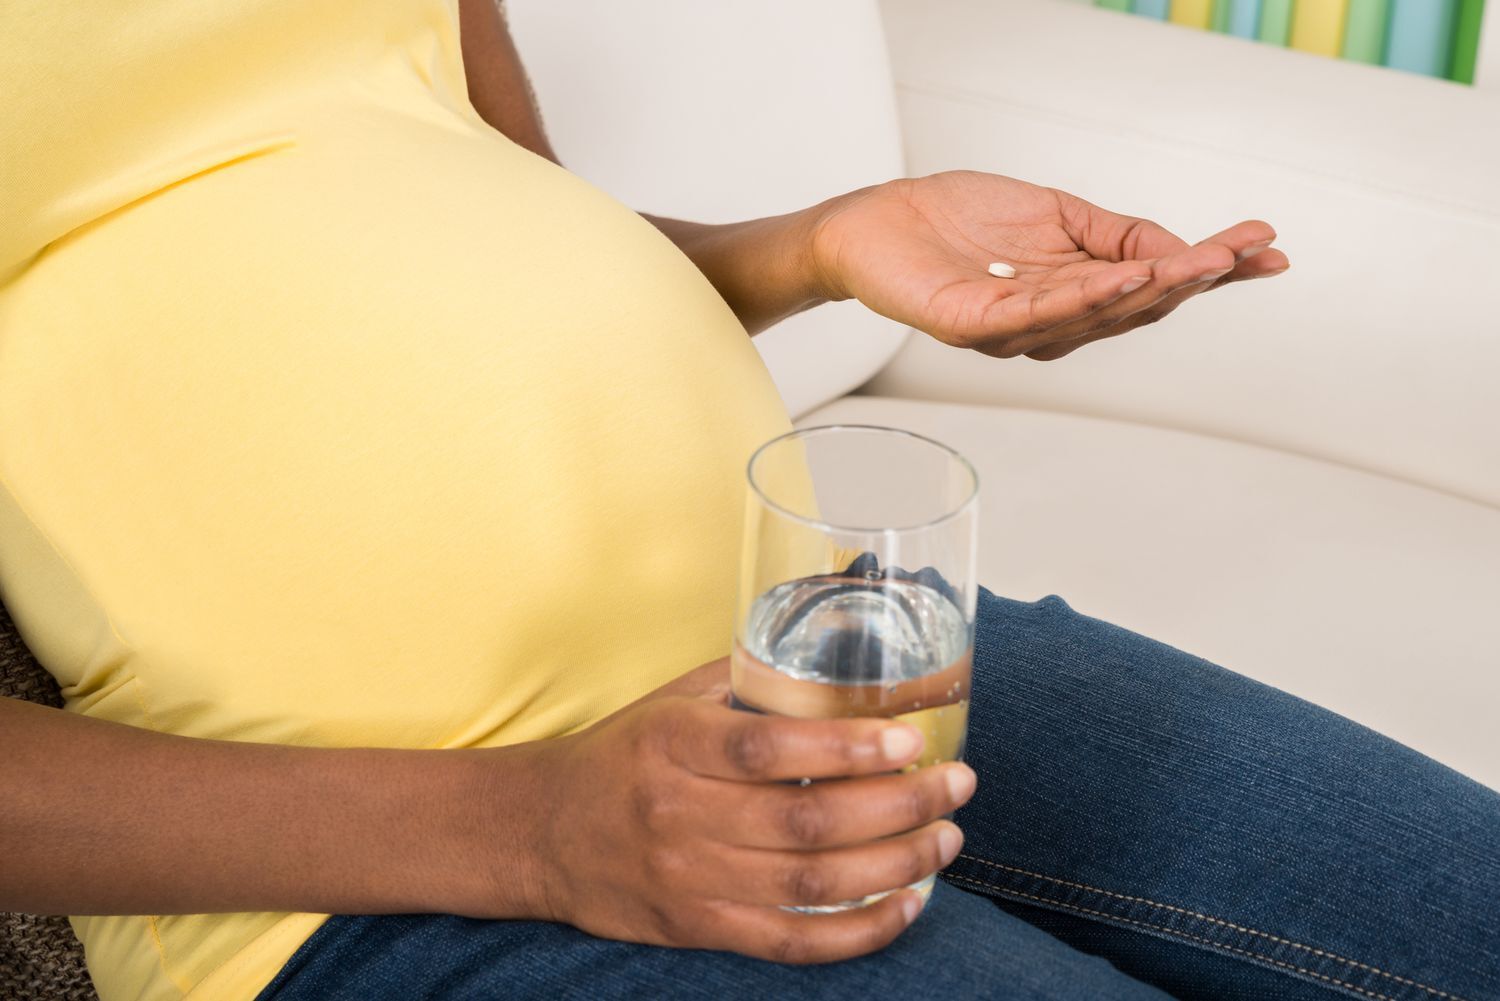 مصرف استامینوفن در دوران بارداری باعث اختلالات رشدی می شود